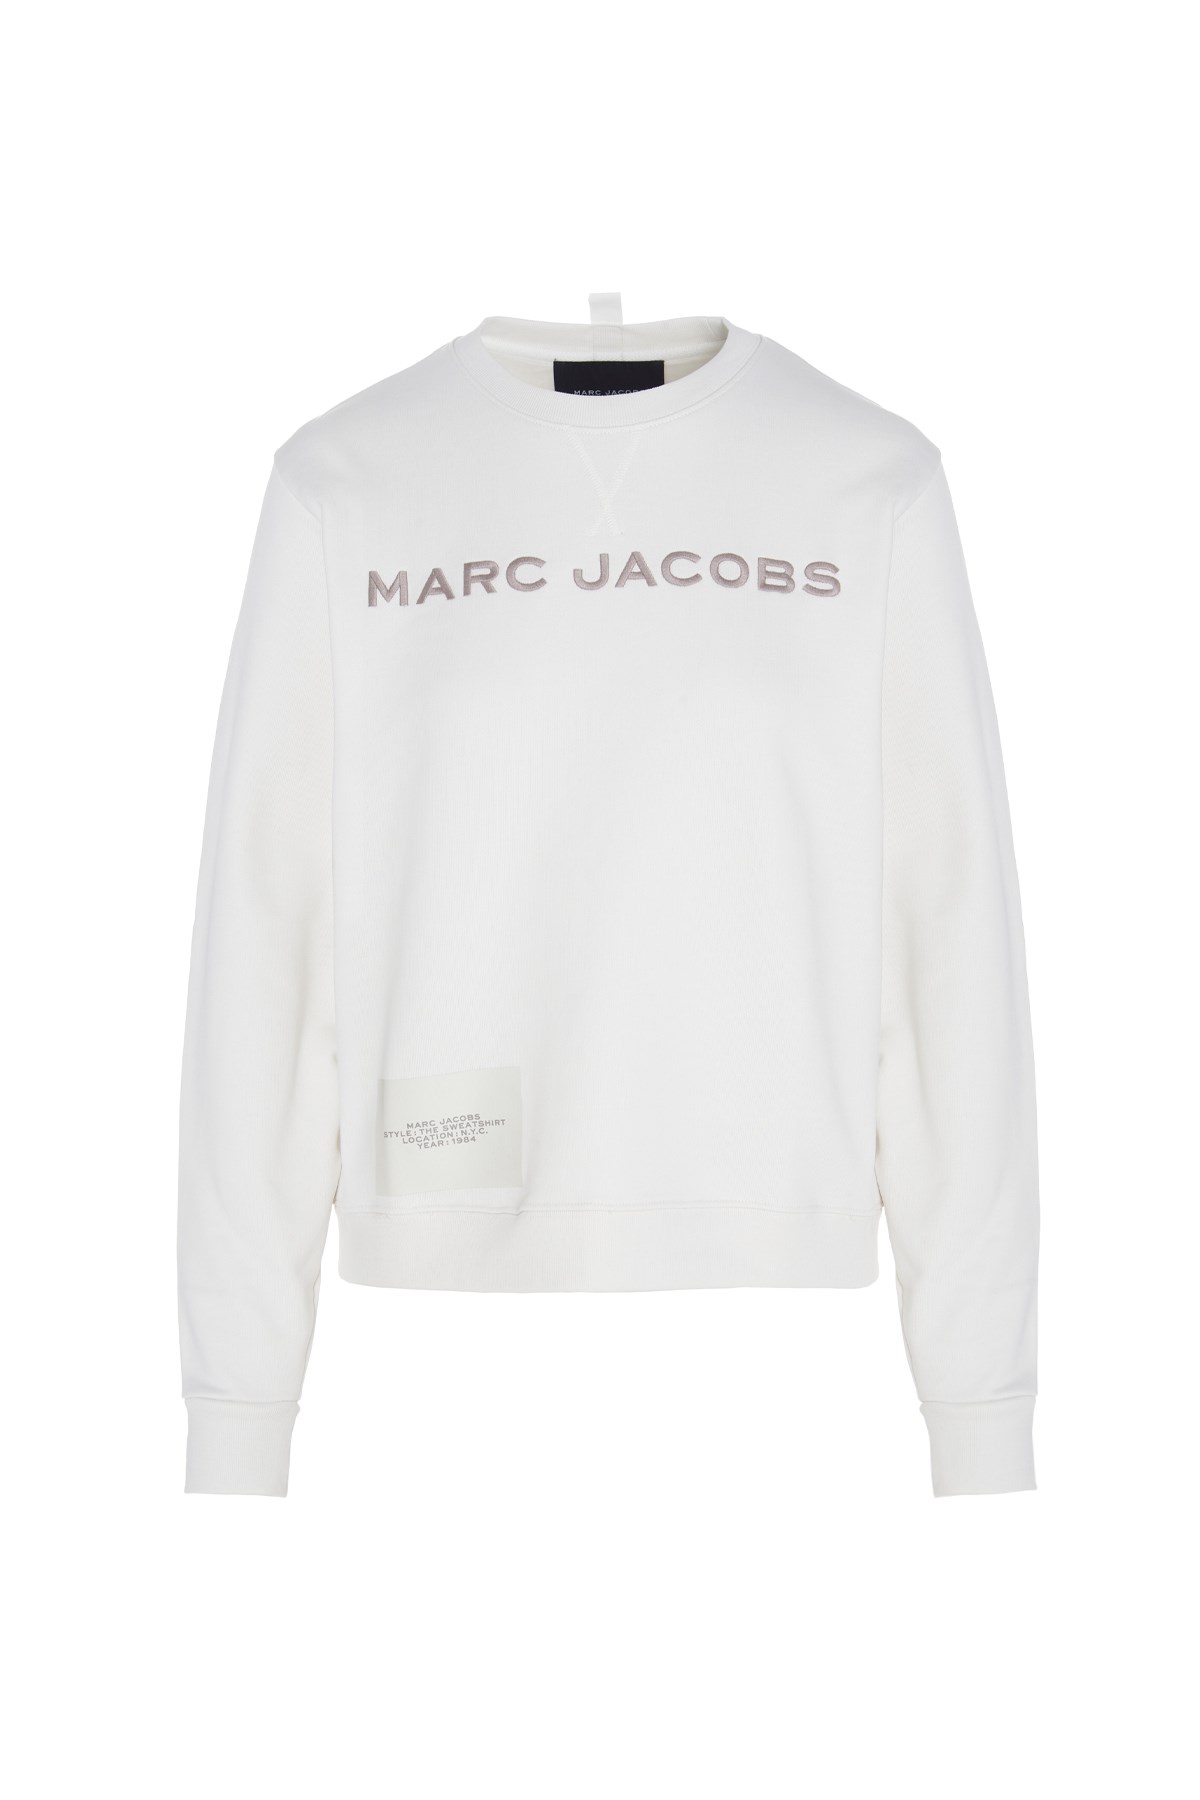 MARC JACOBS Logo Embroidery Sweatshirt